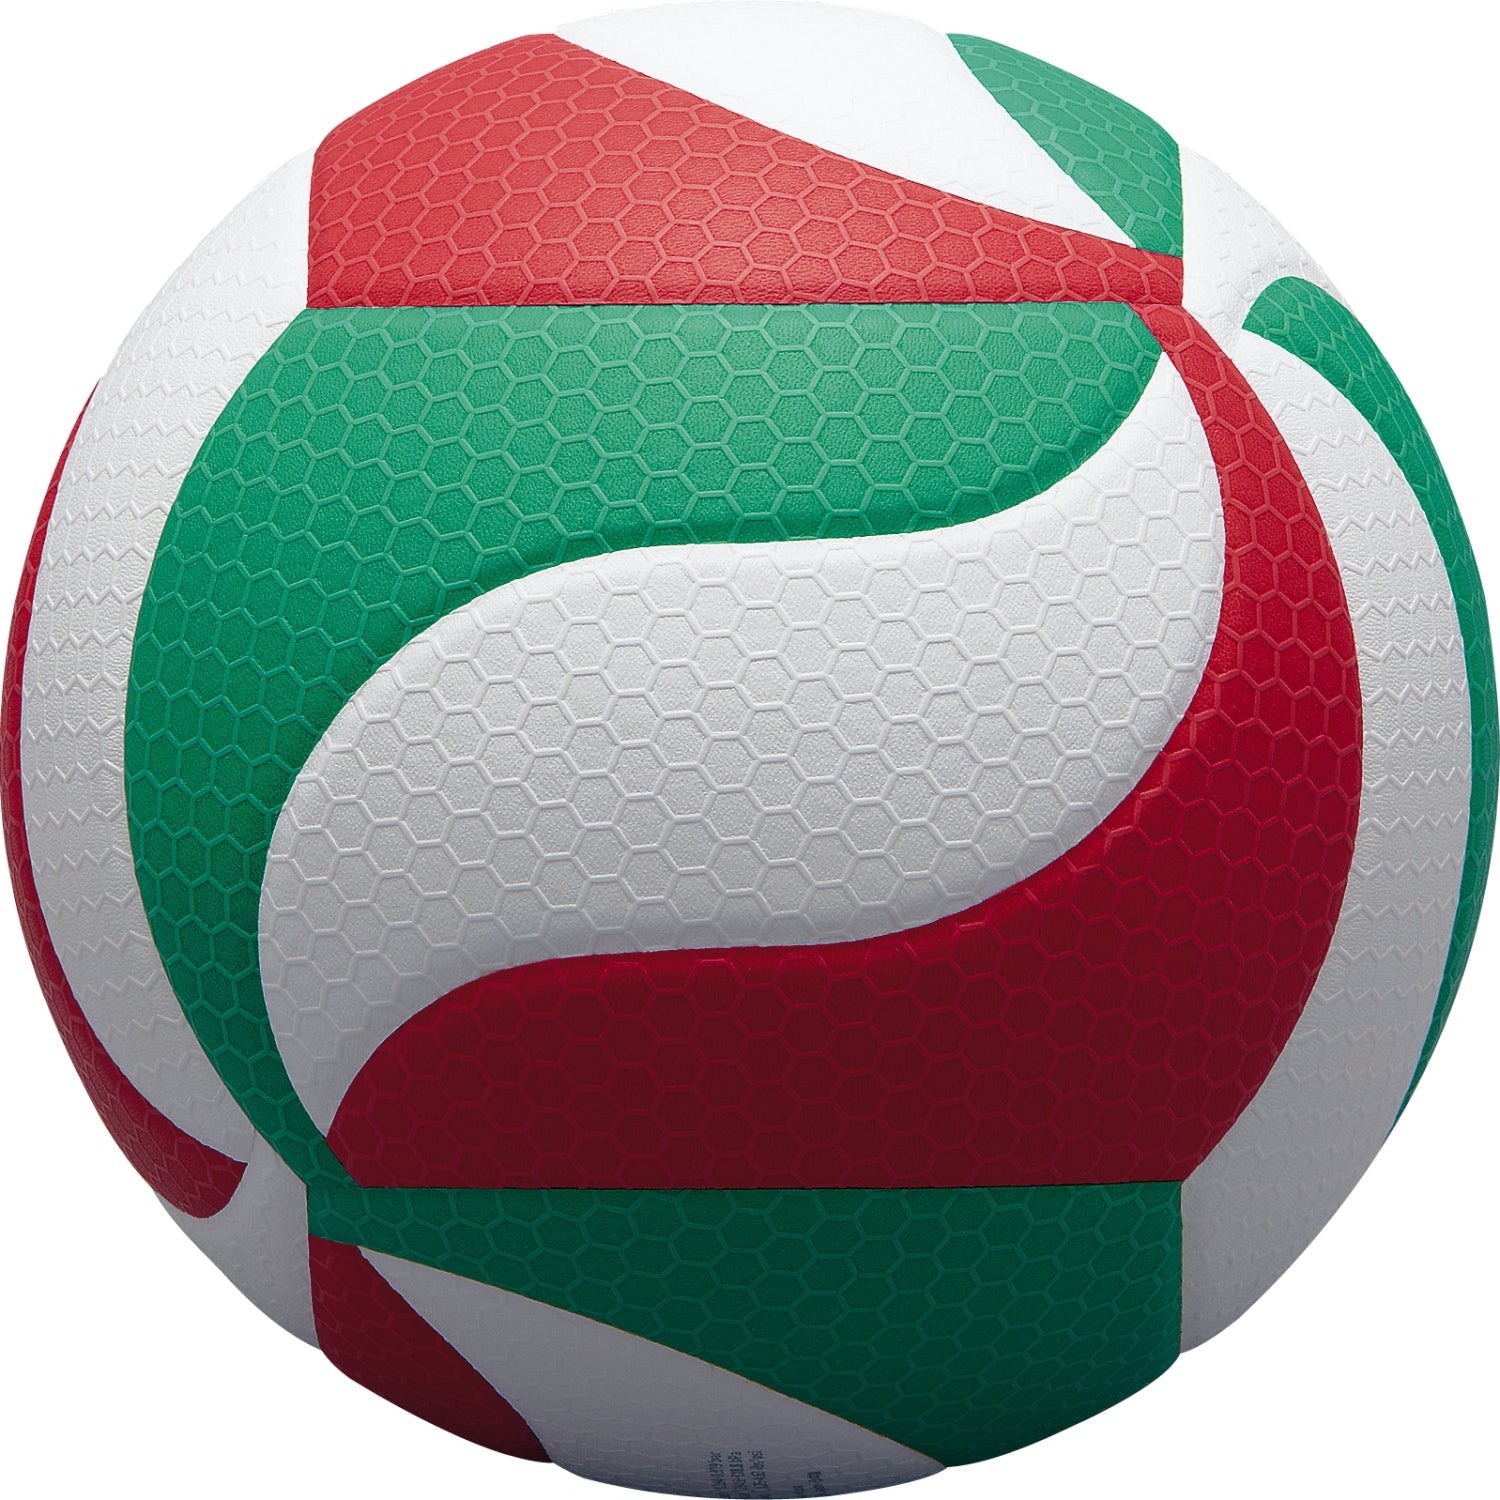 フリスタテック バレーボール5000（5号球） | モルテン公式オンライン 